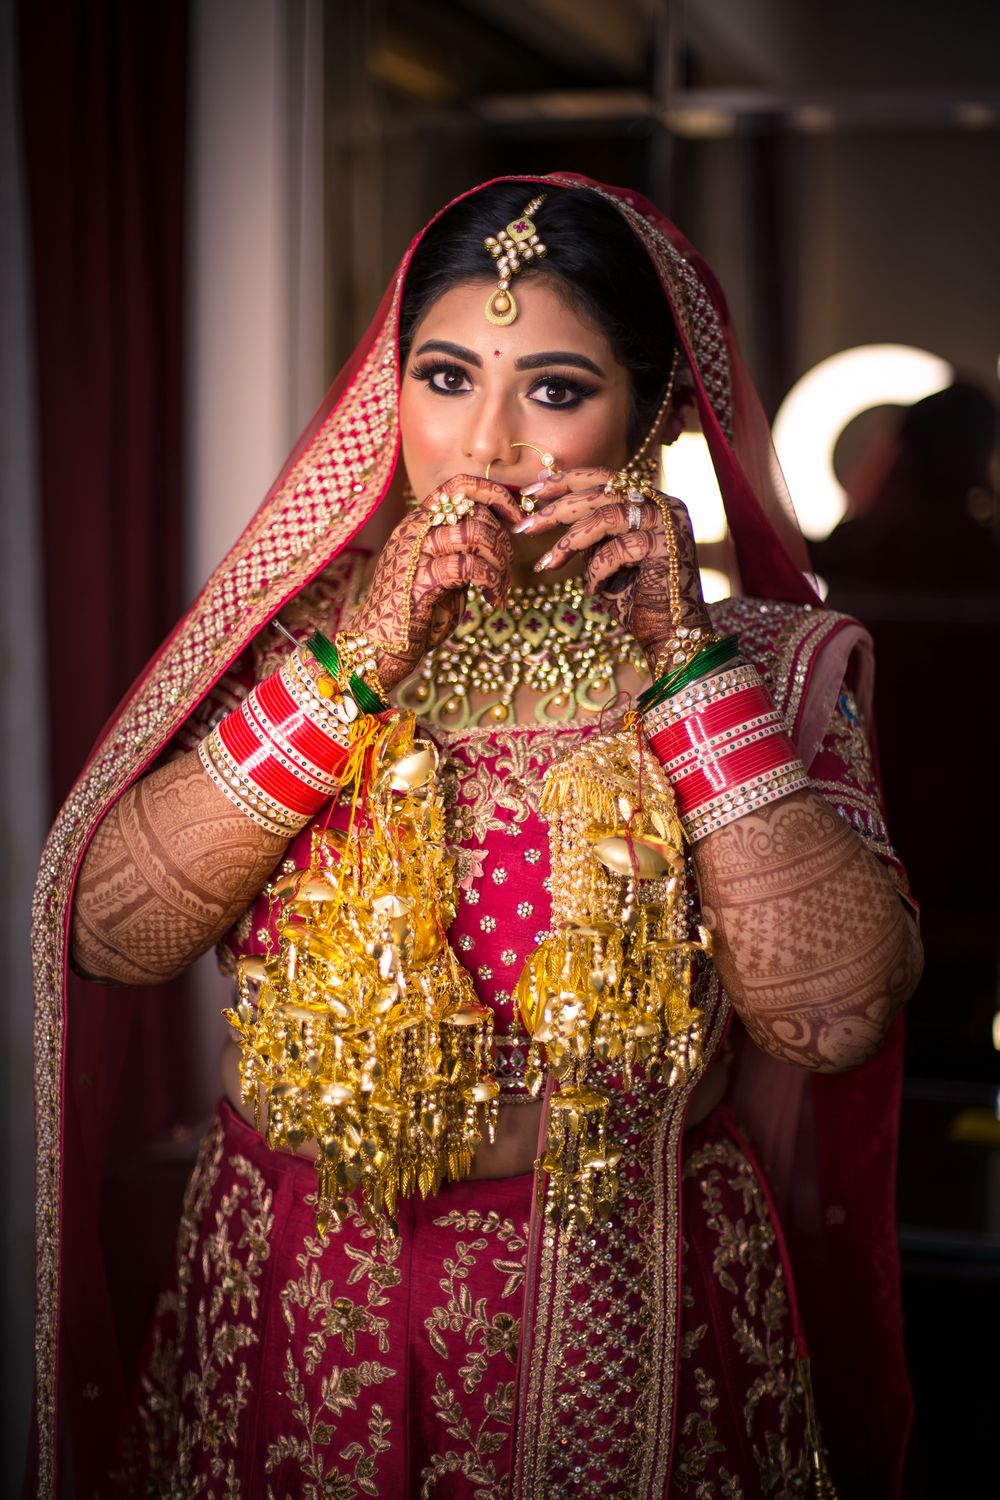 Photo From Arushi bridal - By Shivoli Dogra